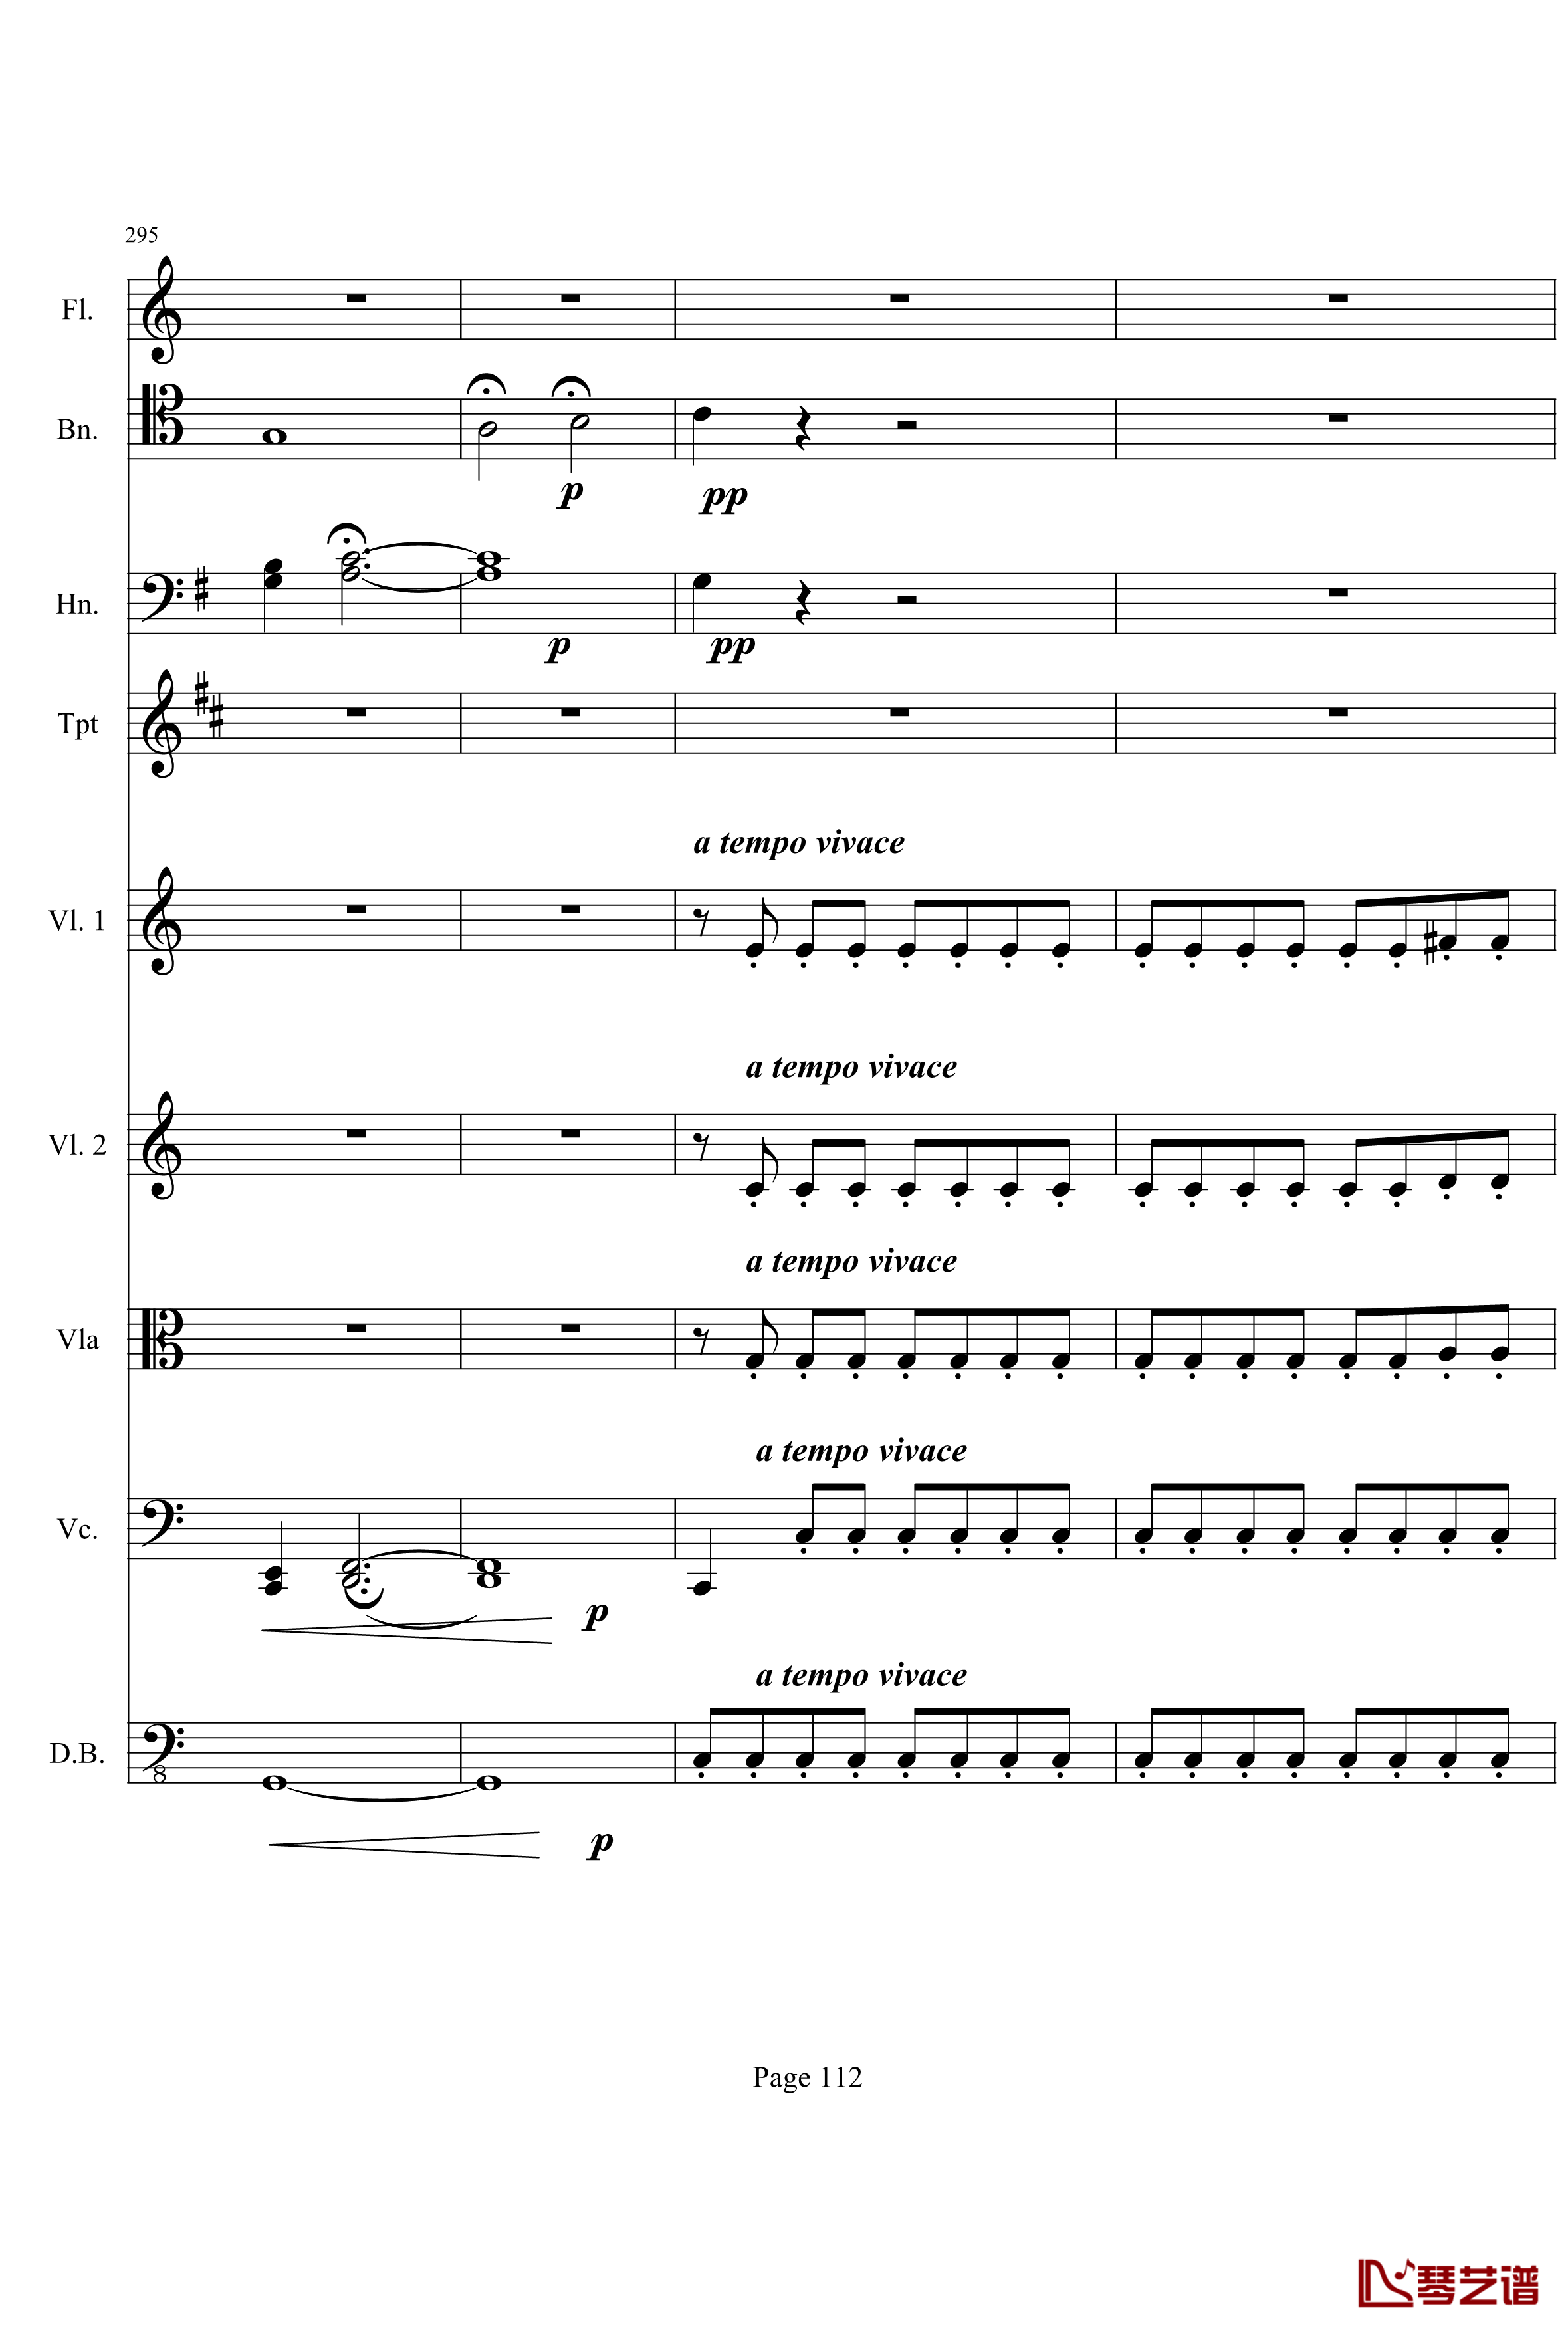 奏鸣曲之交响钢琴谱-第21-Ⅰ-贝多芬-beethoven112